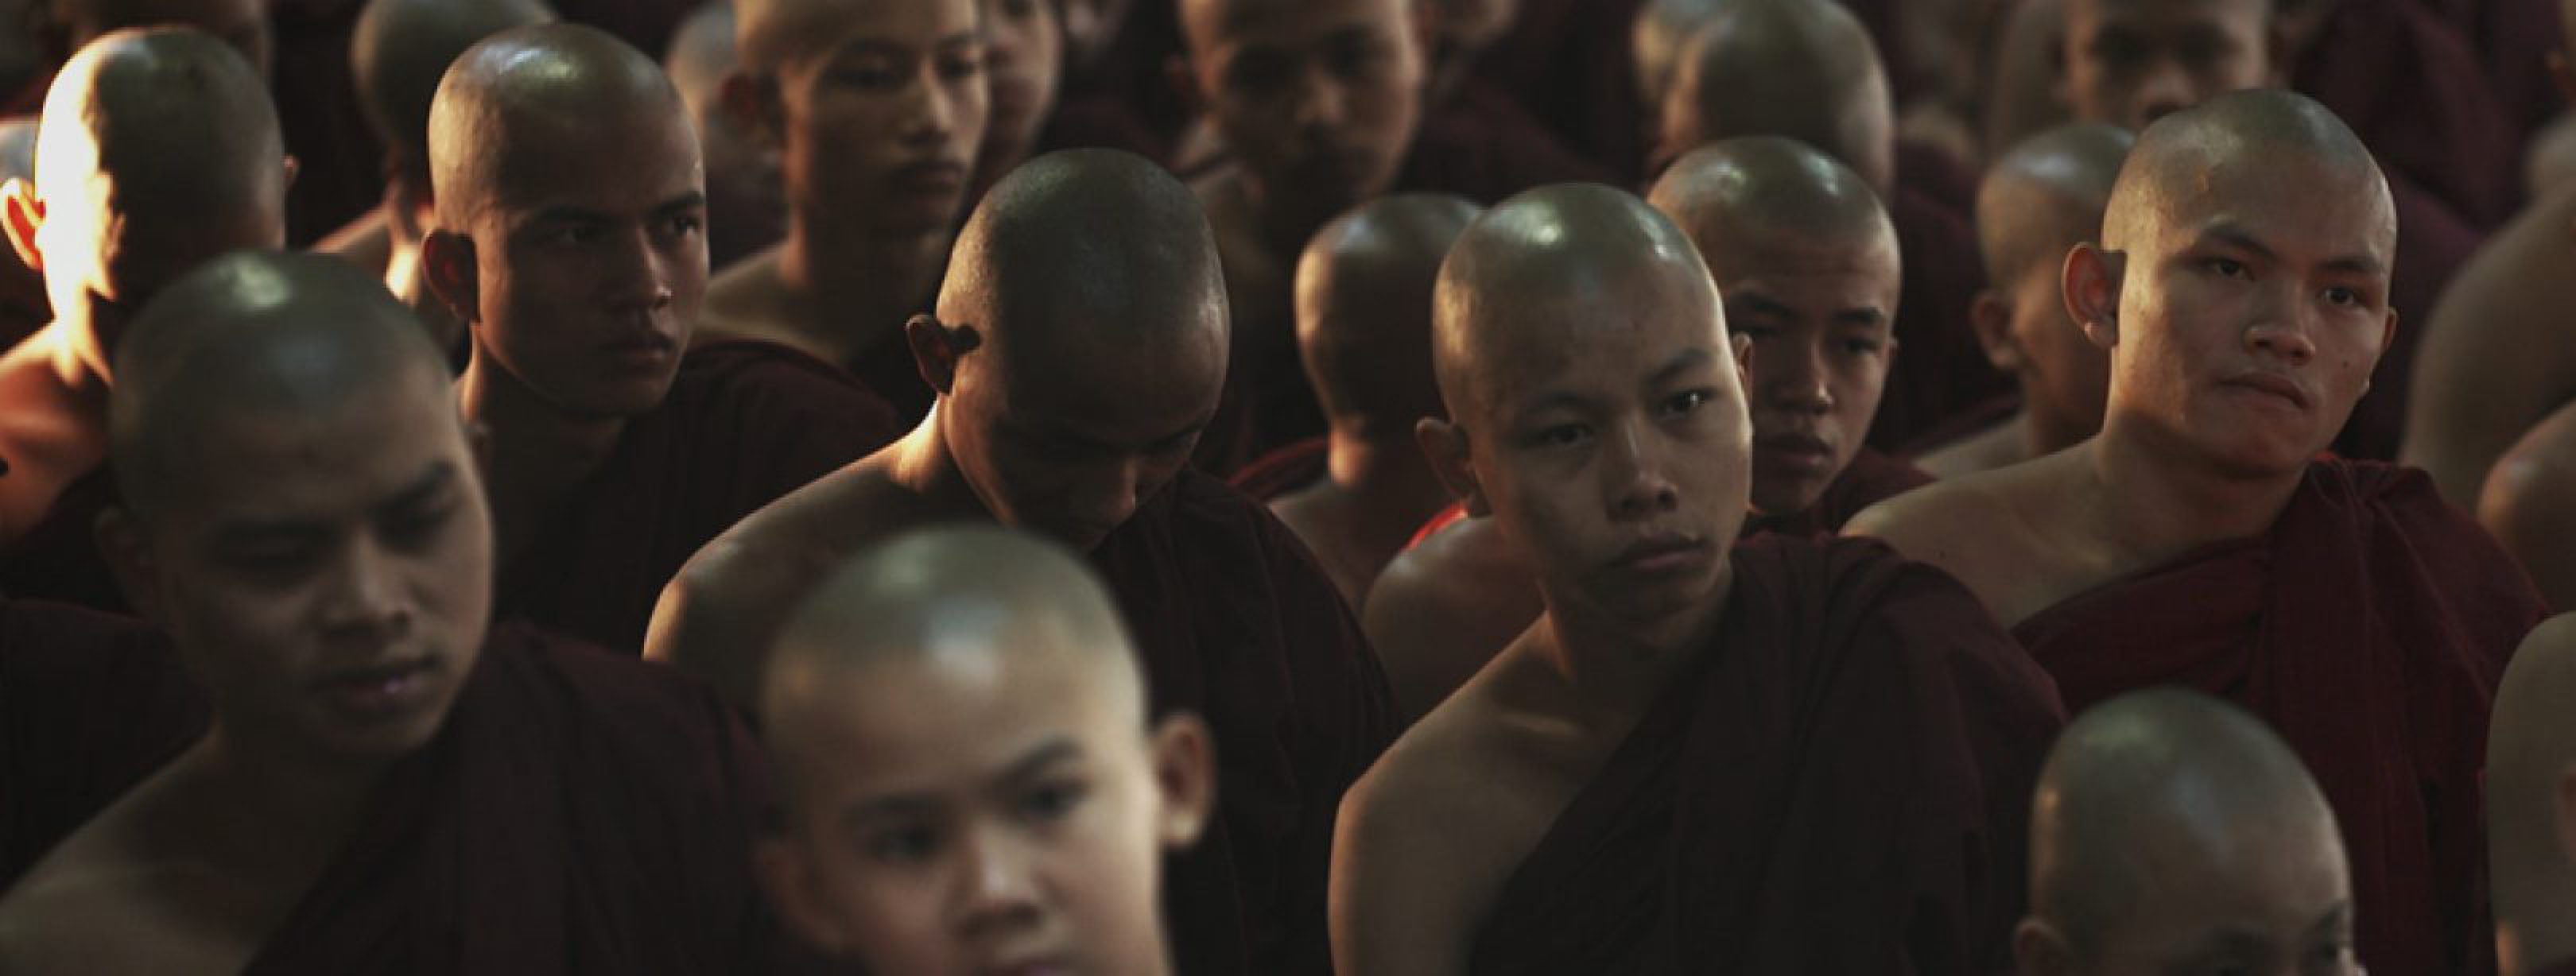 de-macht-van-monniken-in-een-nieuw-myanmar960